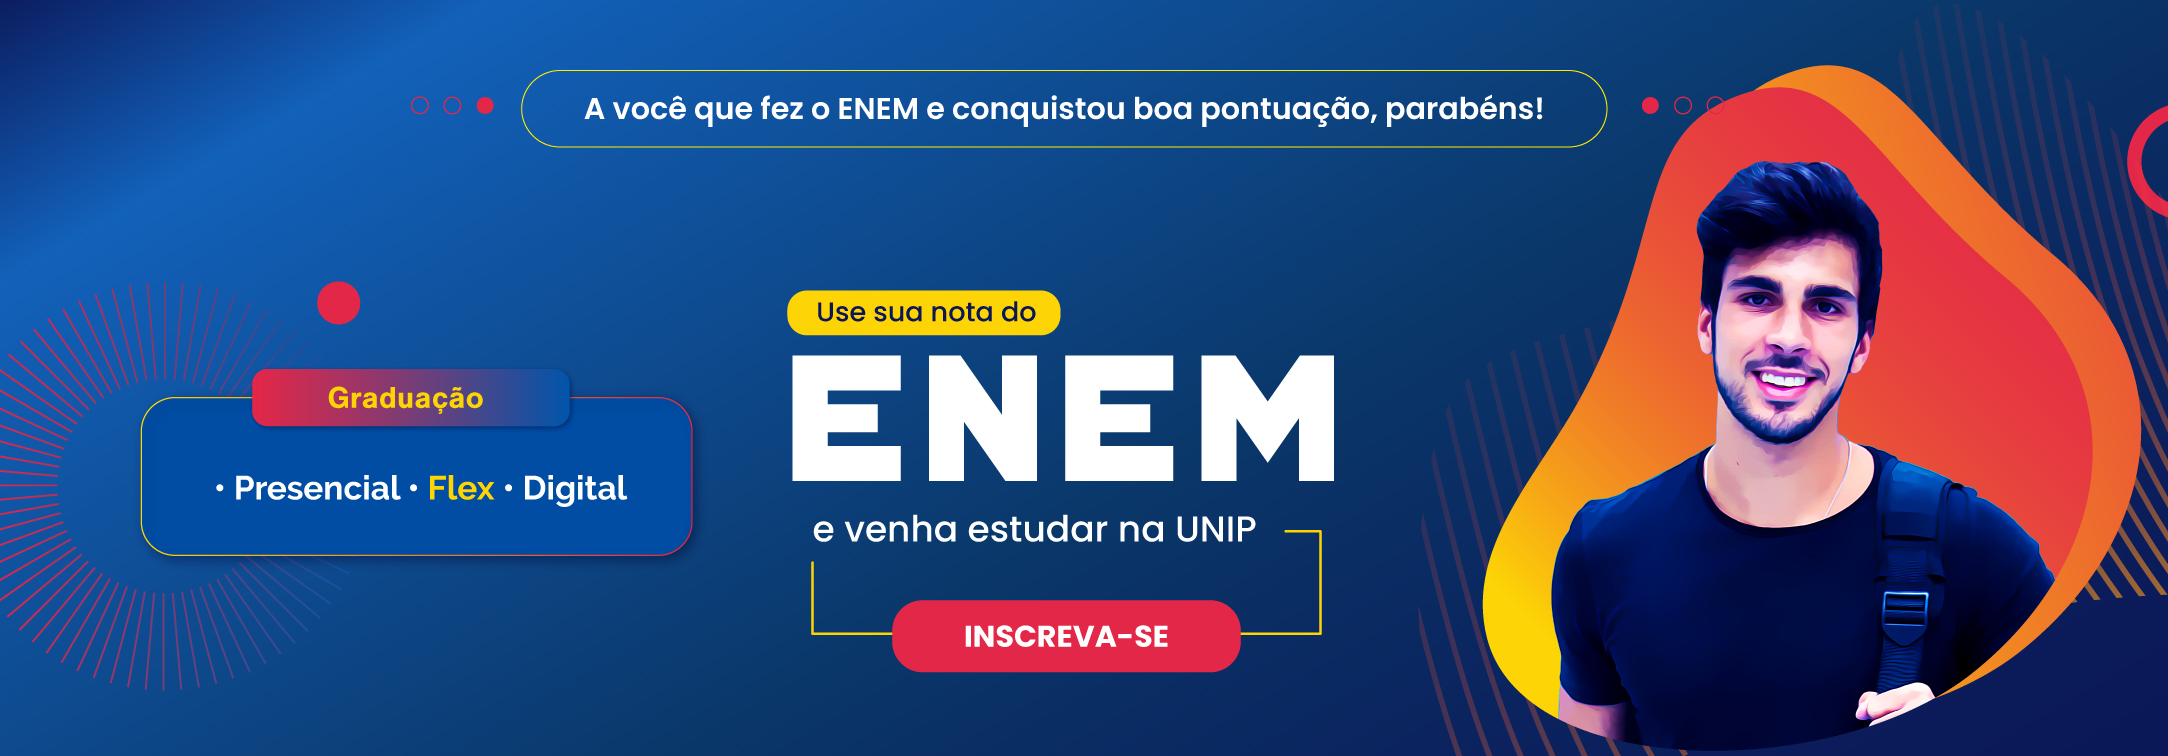 Banner sobre como usar sua nota do ENEM para estudar na UNIP